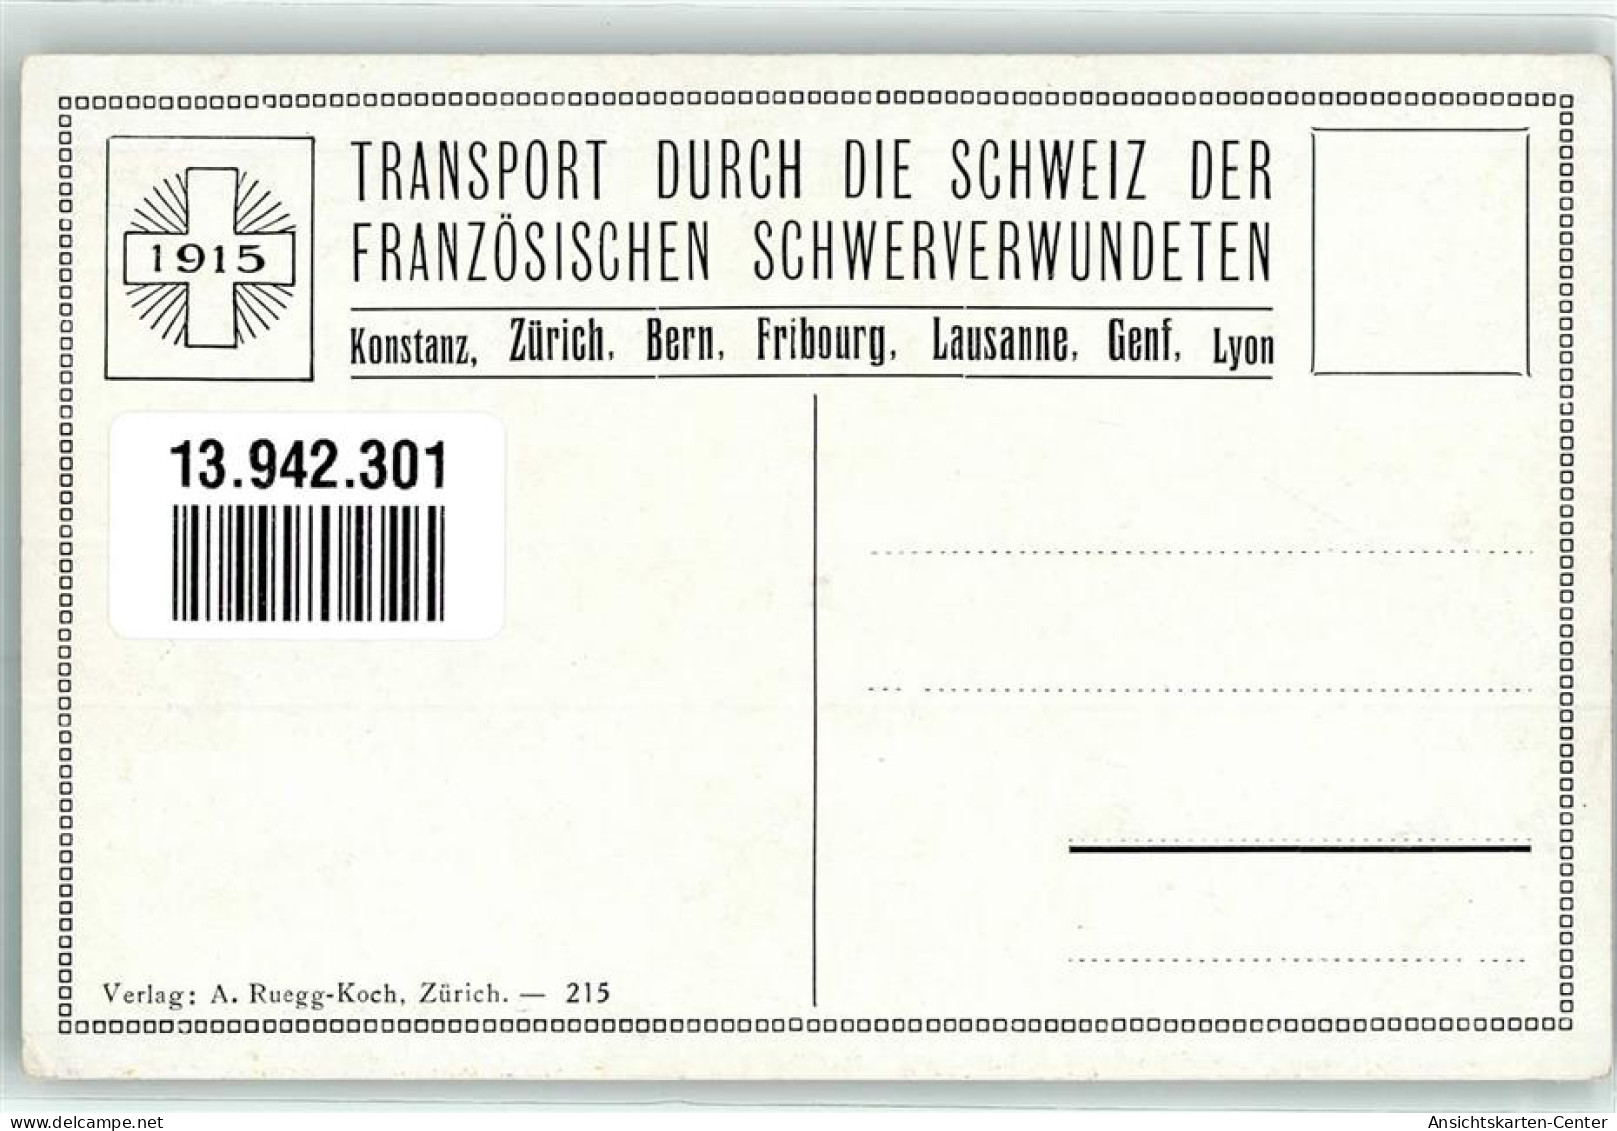 13942301 - Bahnhof Eisenbahn Verwundete Krankenschwester Transport Durch Die Schweiz Der Franzoesischen Schwerverwundet - Croix-Rouge